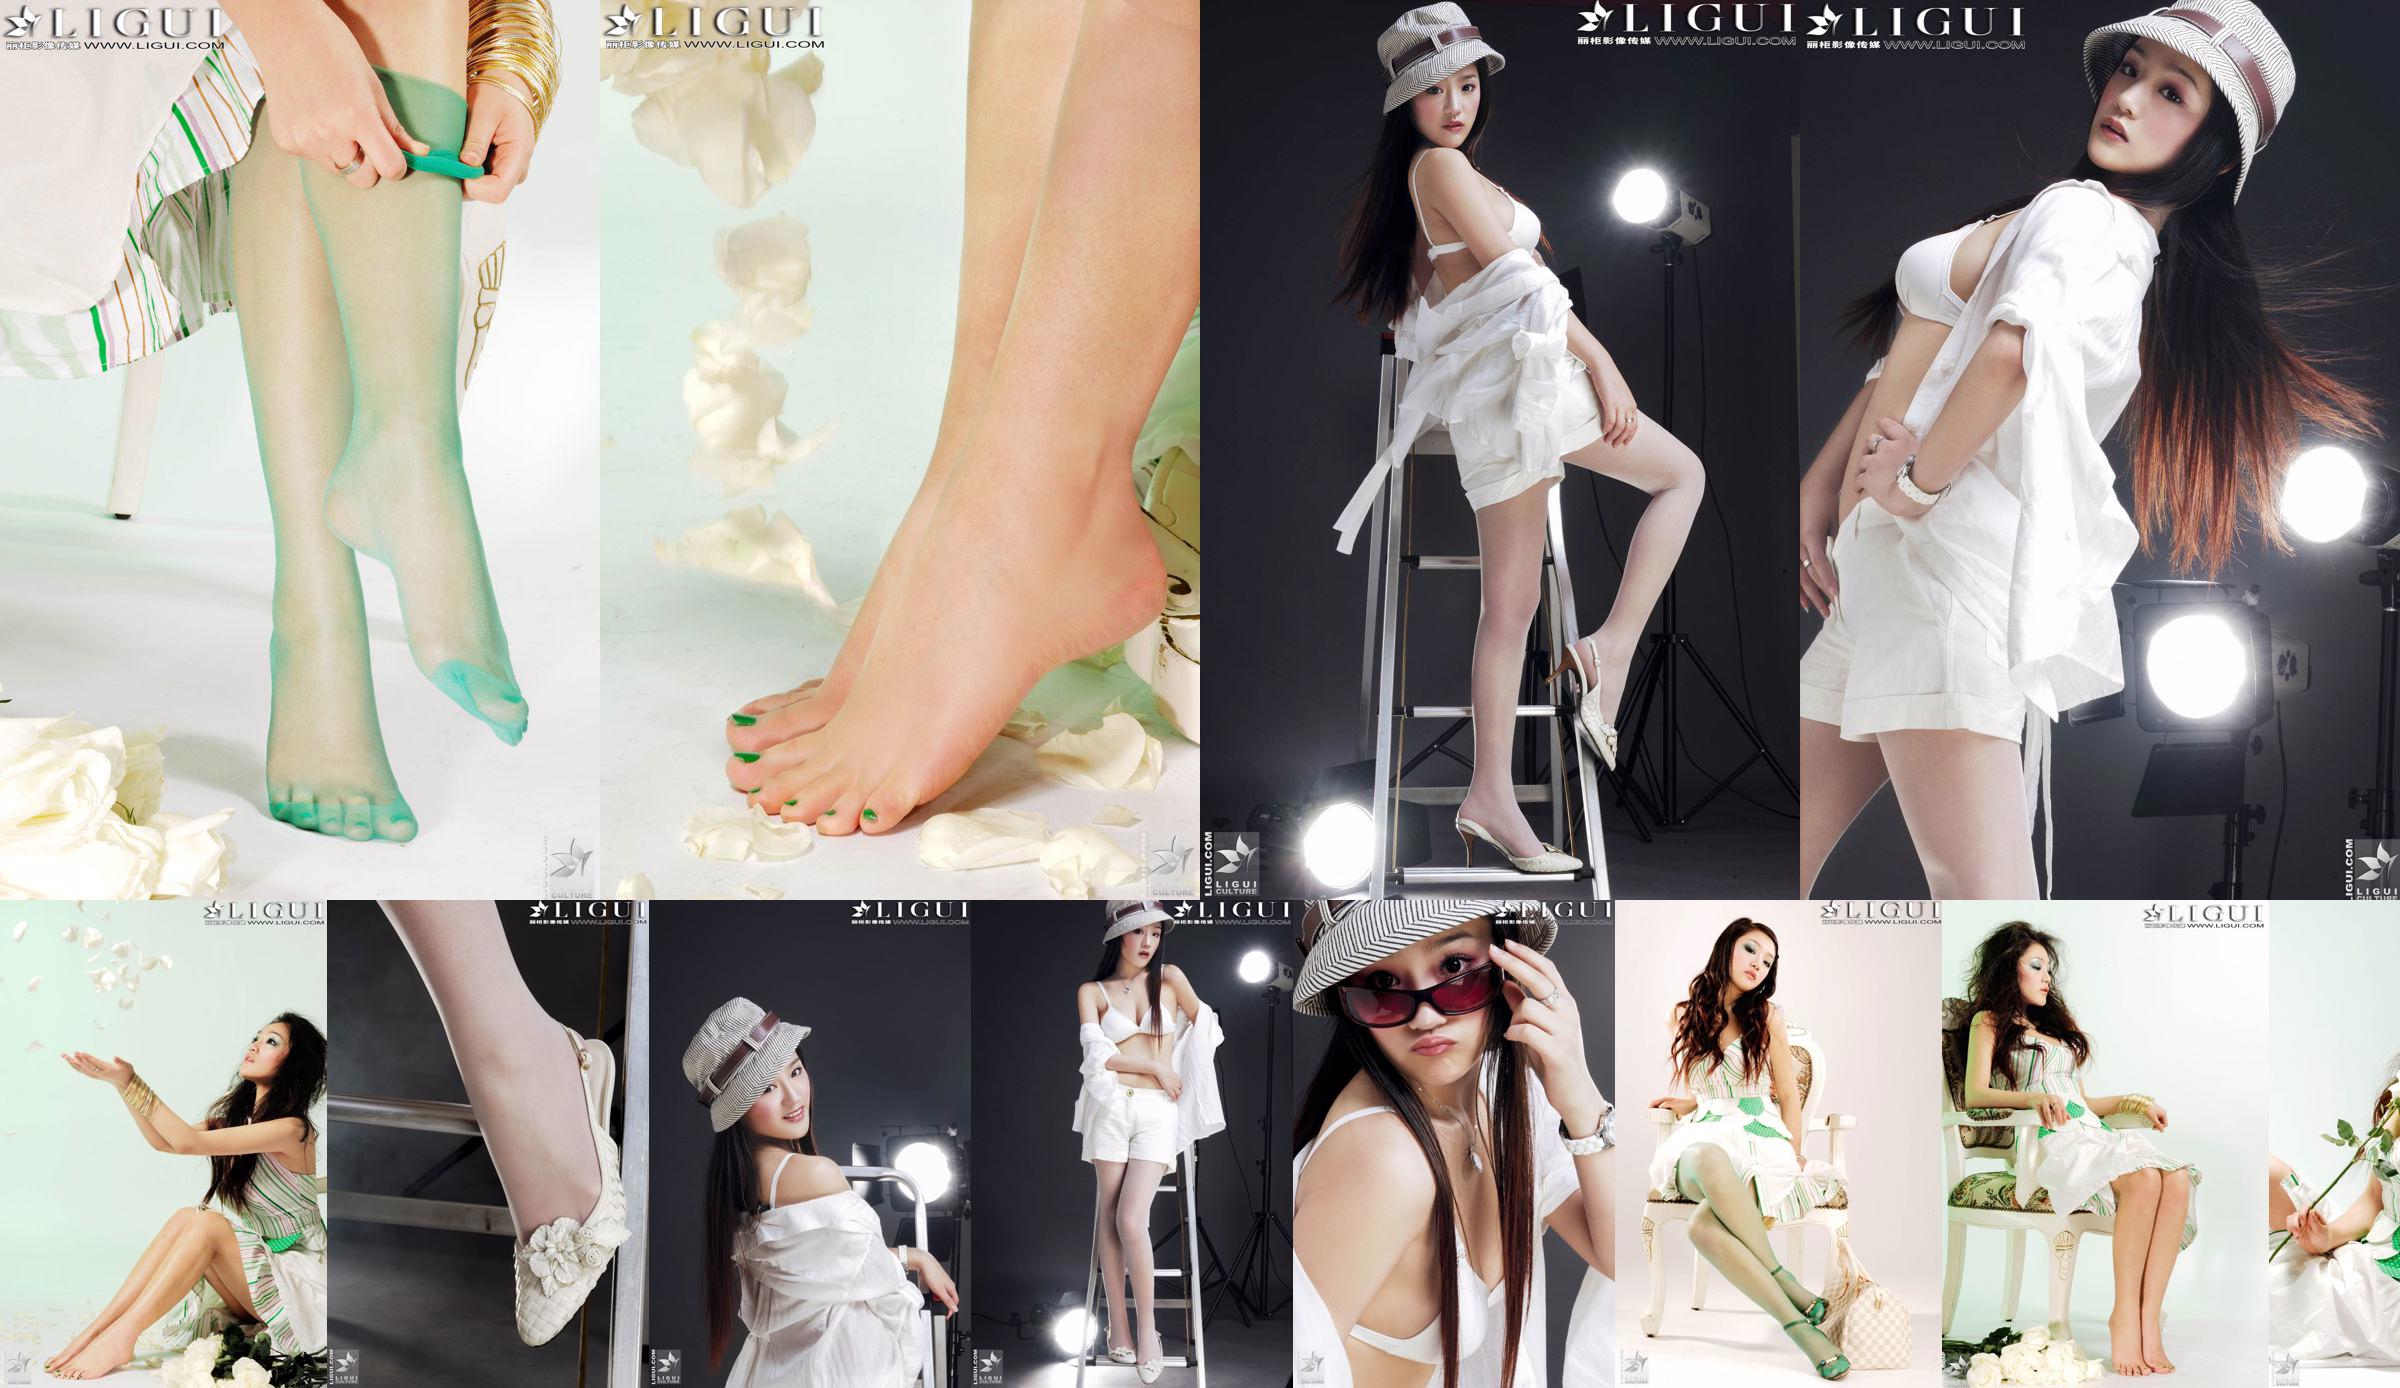 [丽柜贵 foot LiGui] นางแบบภาพถ่าย "Fashionable Foot" ของ Zhang Jingyan ขาสวยและเท้าไหม No.7ac046 หน้า 3